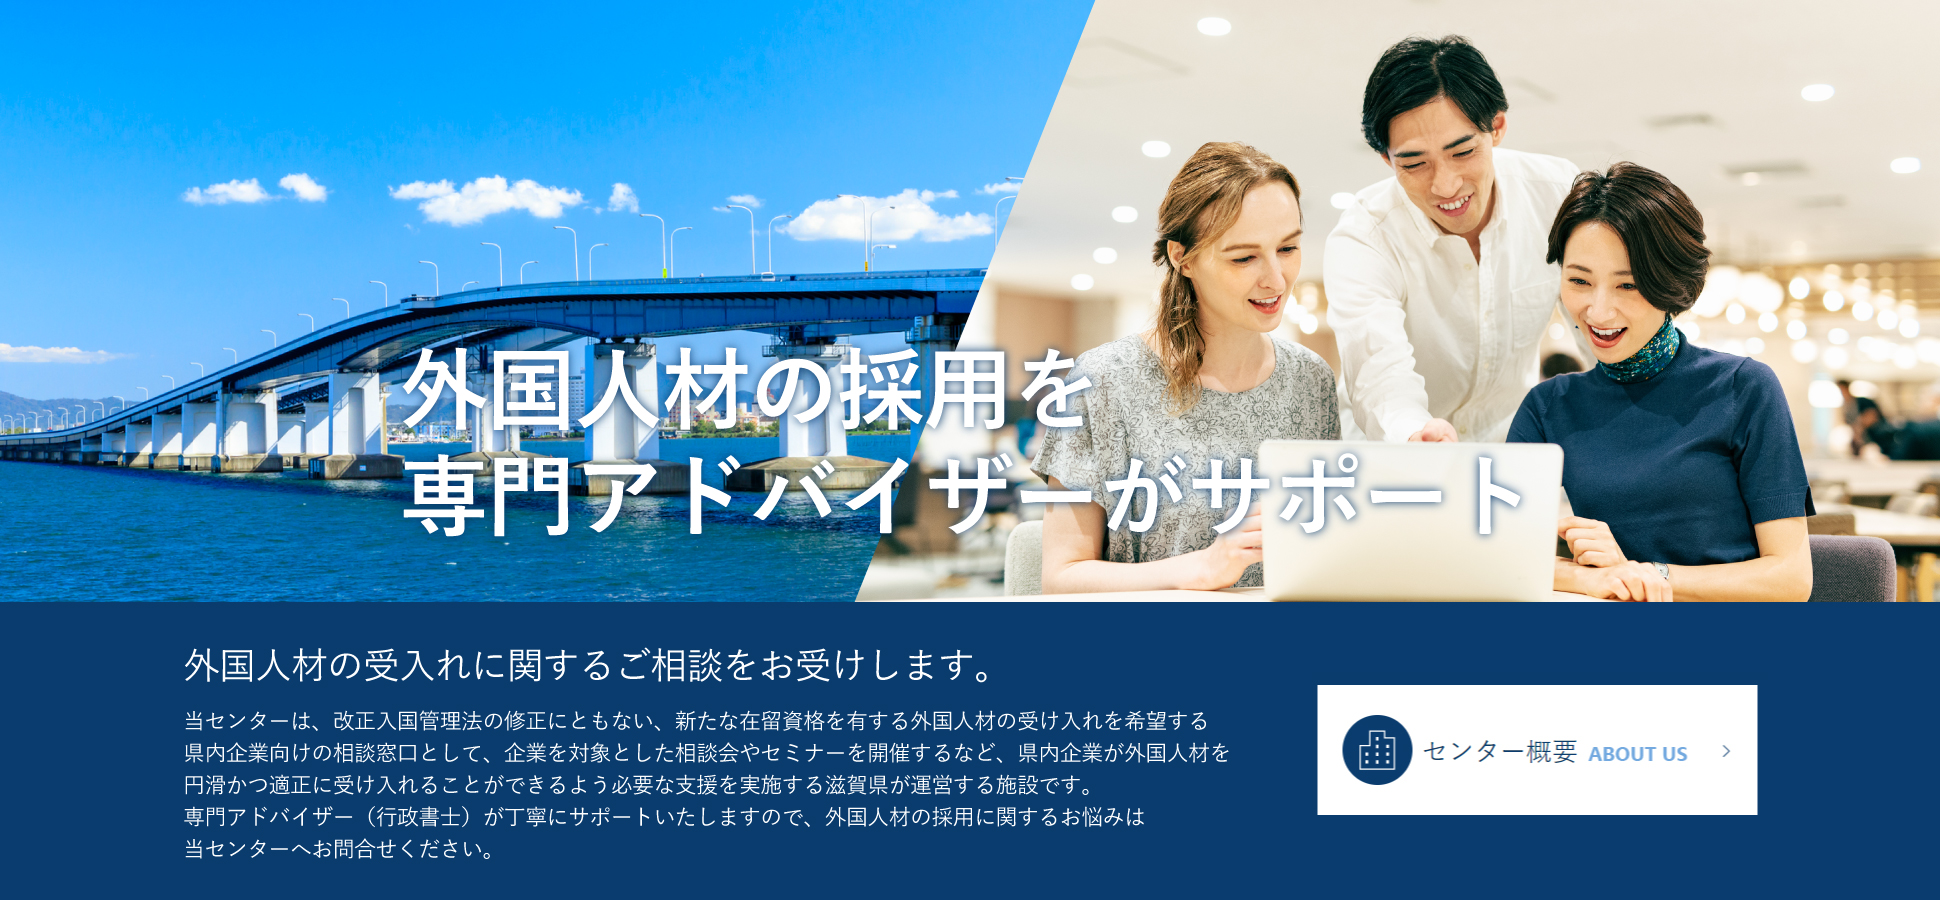 滋賀県で就労したい外国人の“働く”に関するお悩みを解決